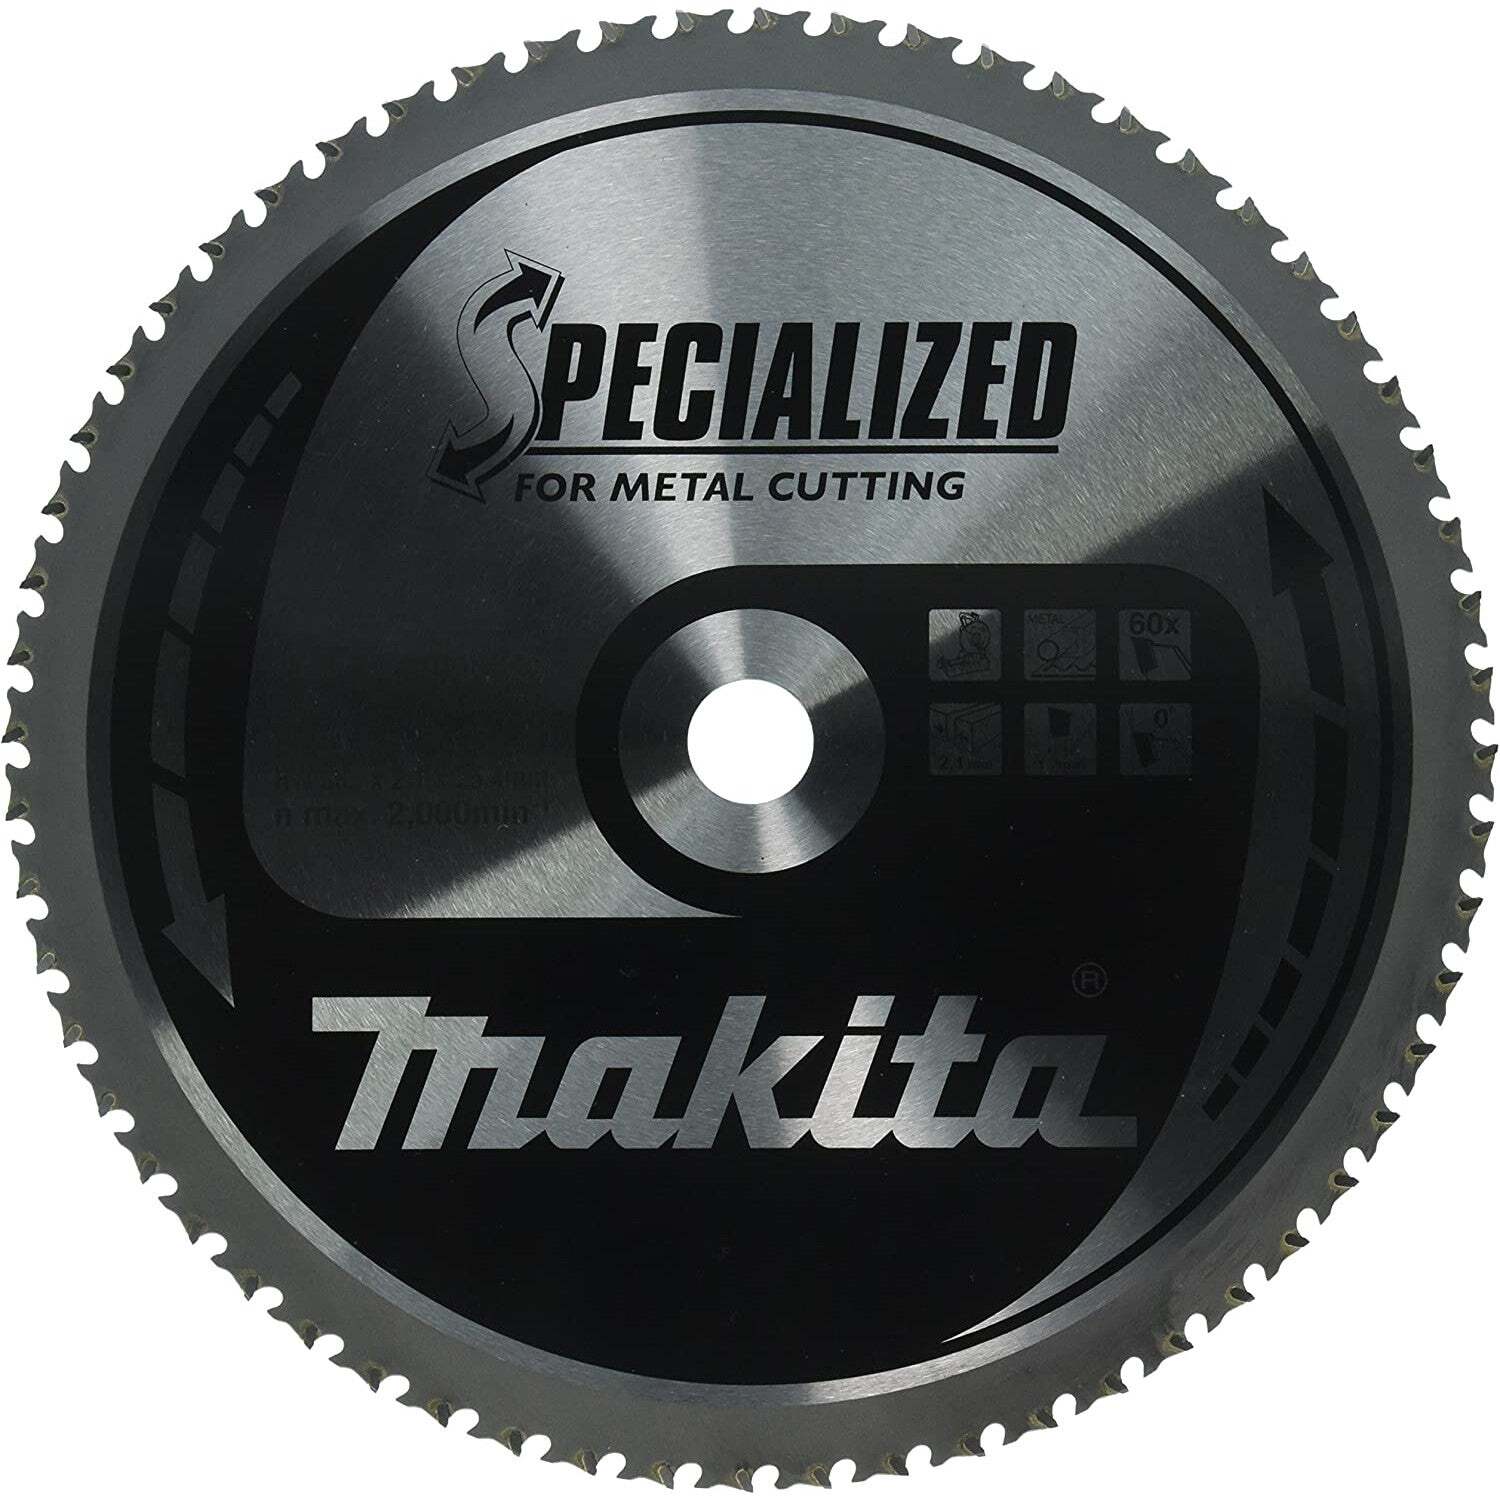 Makita Cirkelzaagblad voor Metaal | Specialized | Ø 305mm Asgat 25,4mm 60T - B-33439